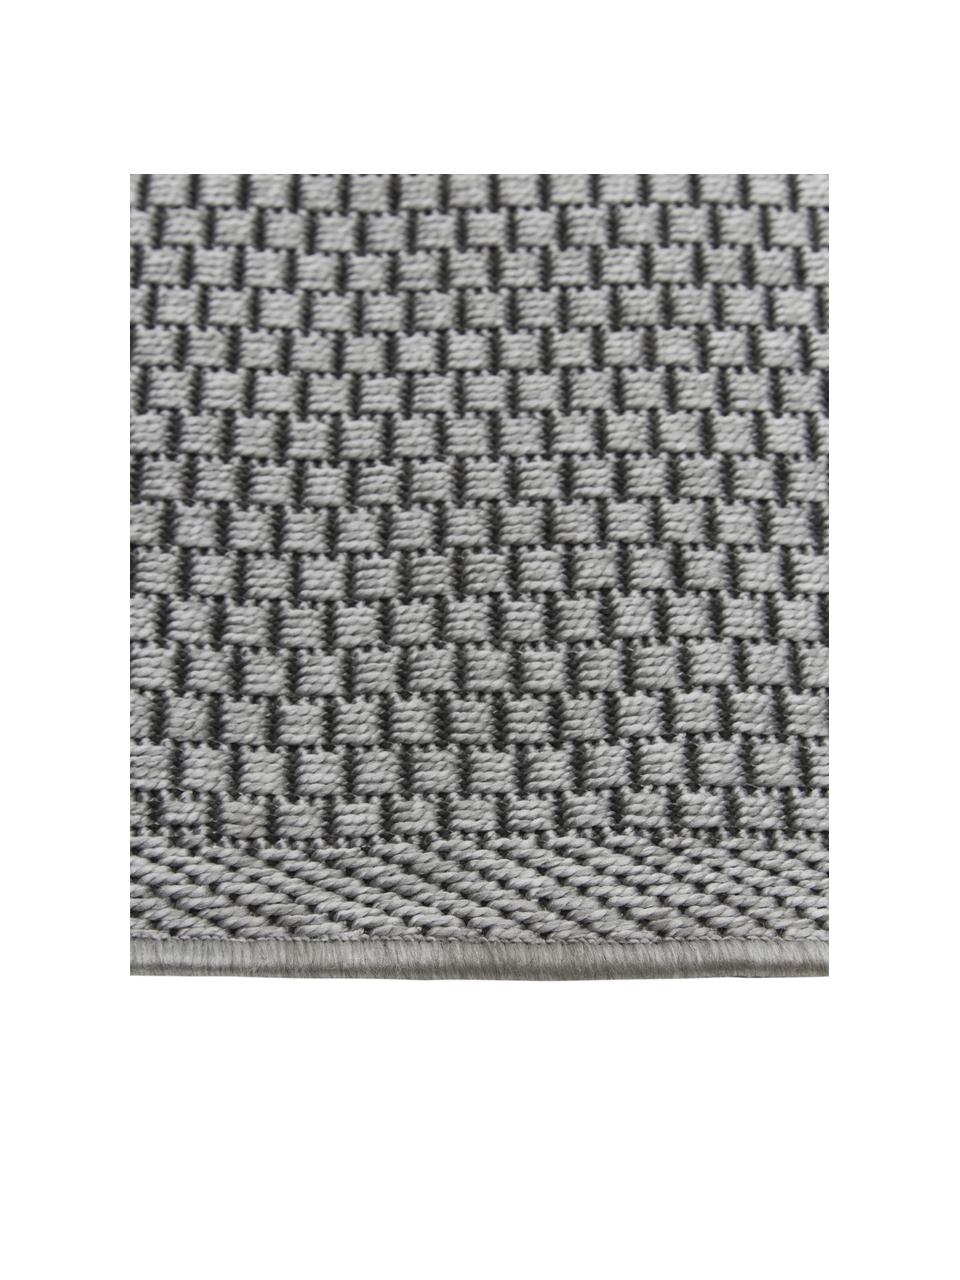 Tappeto ovale da interno-esterno color grigio Toronto, 100% polipropilene, Grigio, Larg. 160 x Lung. 230 cm, (taglia M)